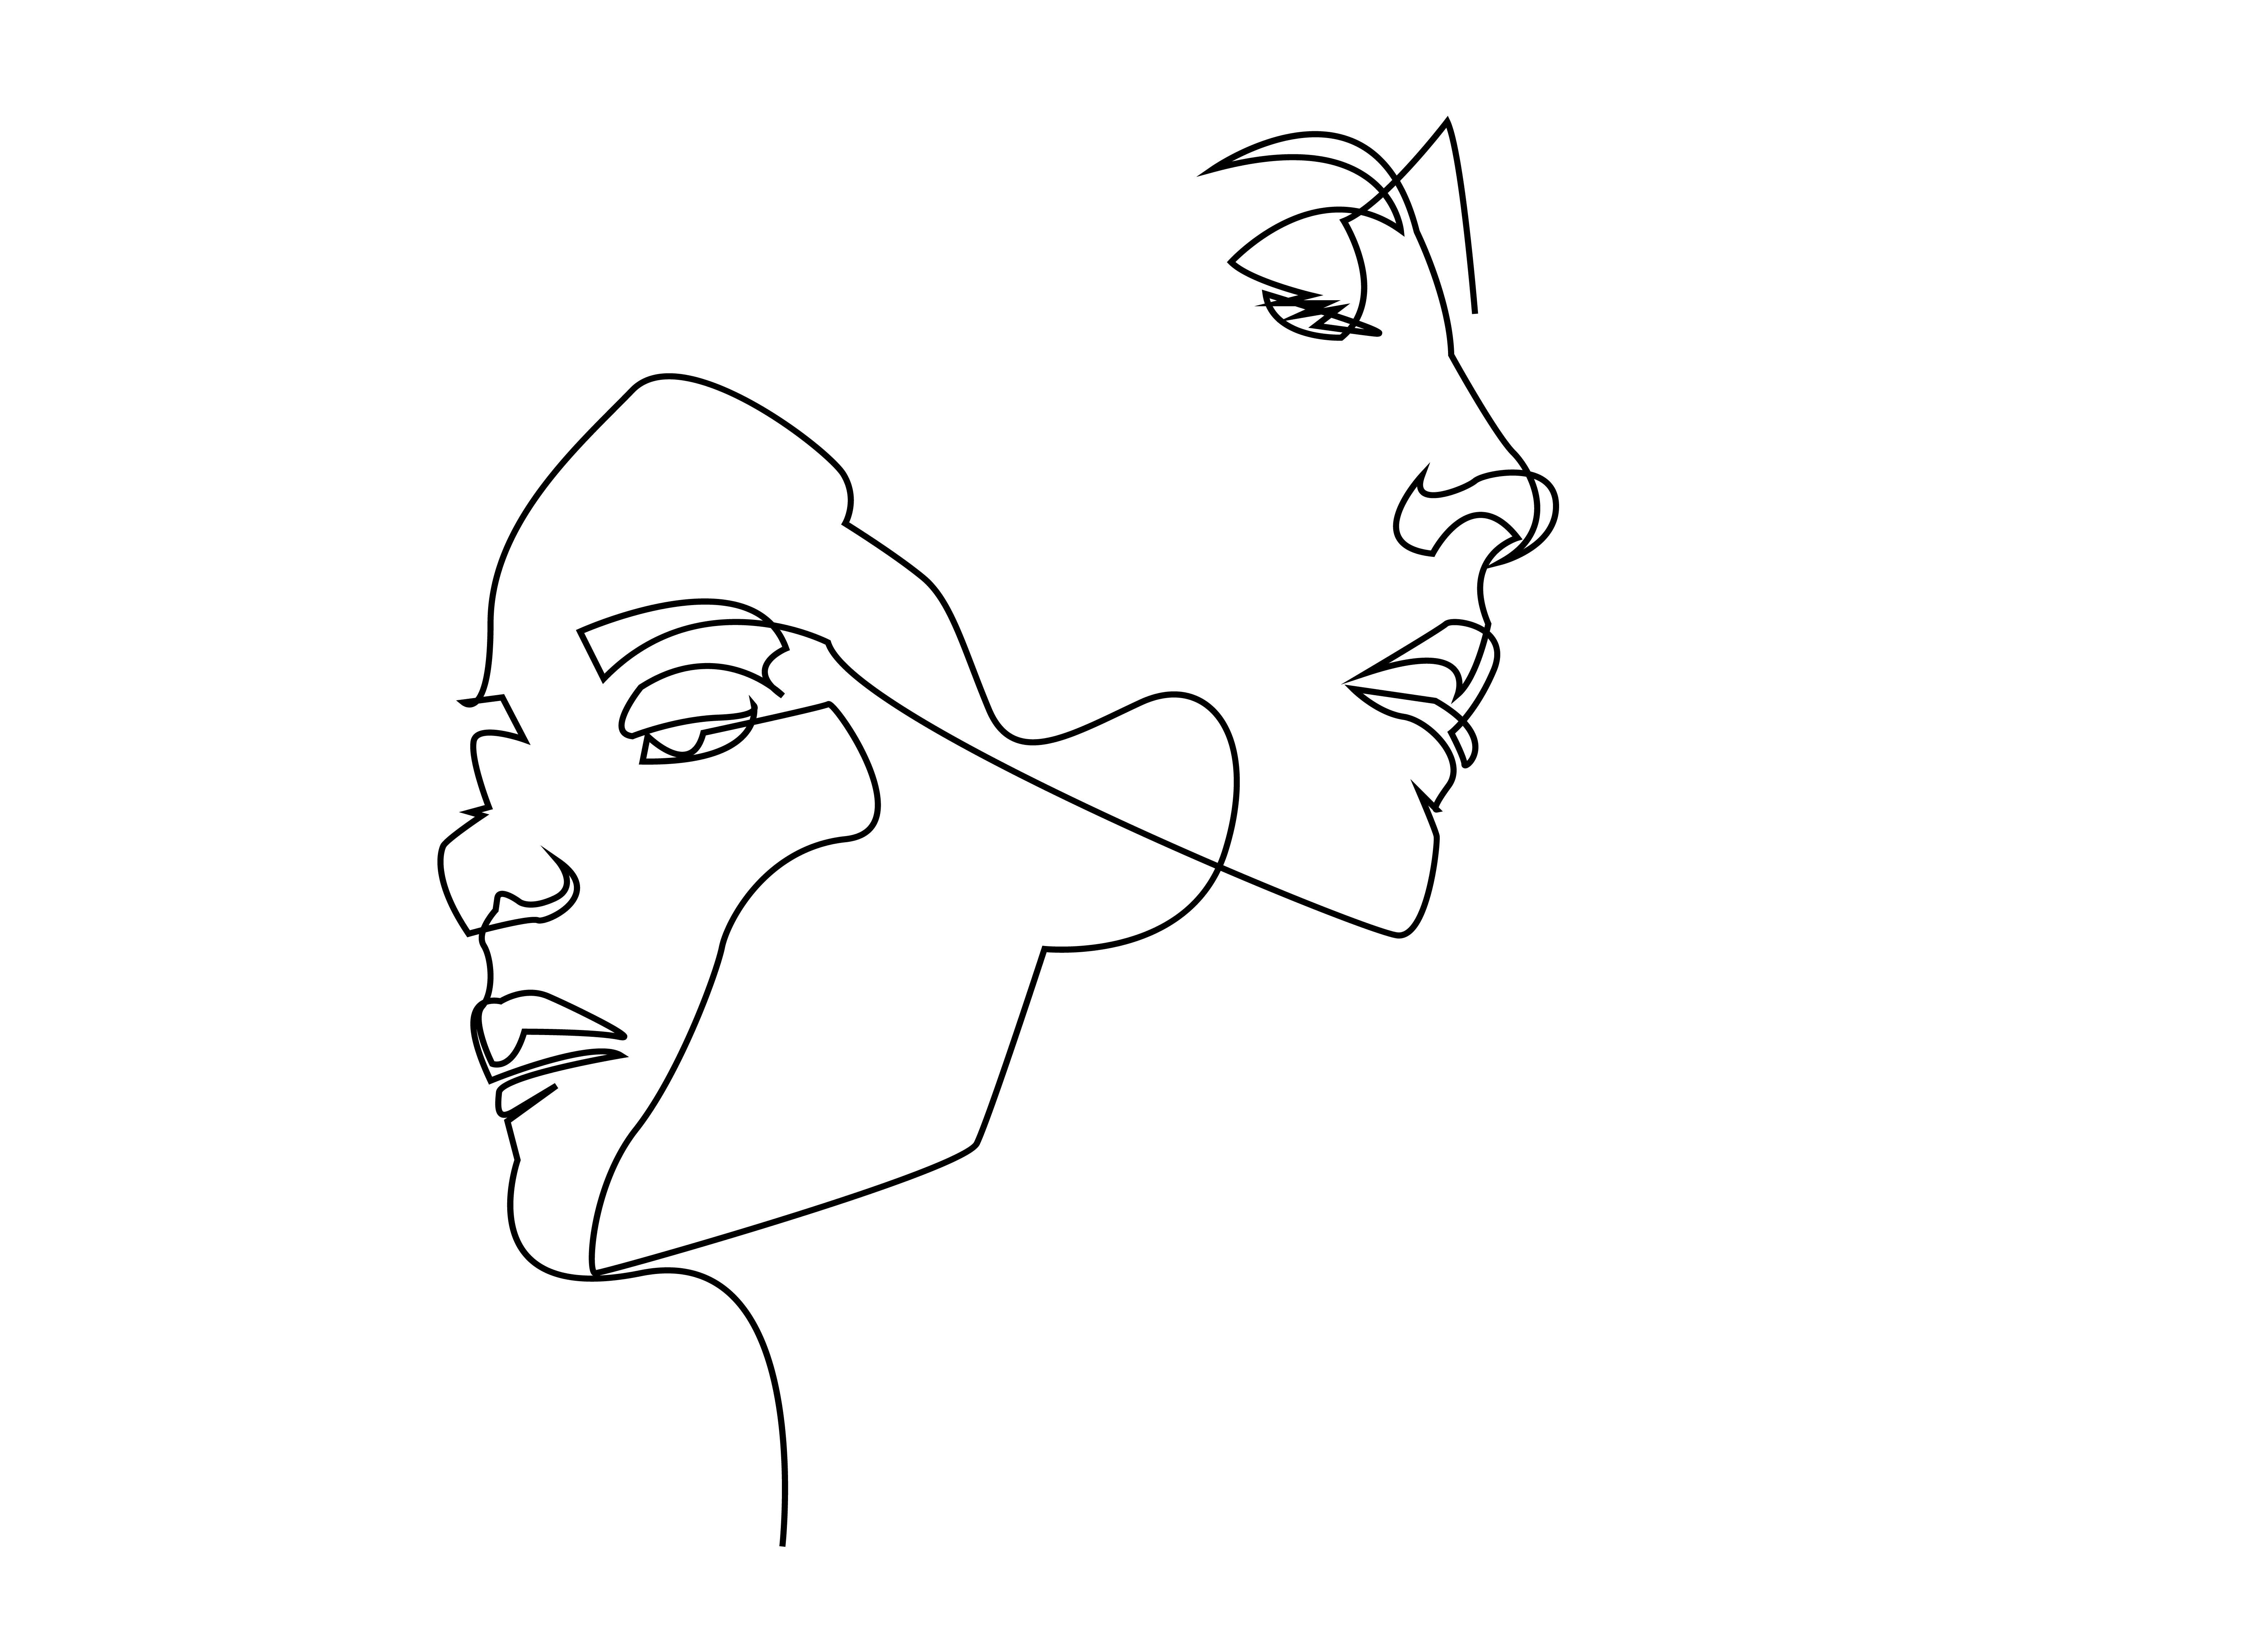 Face outline. Портрет одной линией. Контур женского лица. Лицо линиями. Набросок лица очертания.